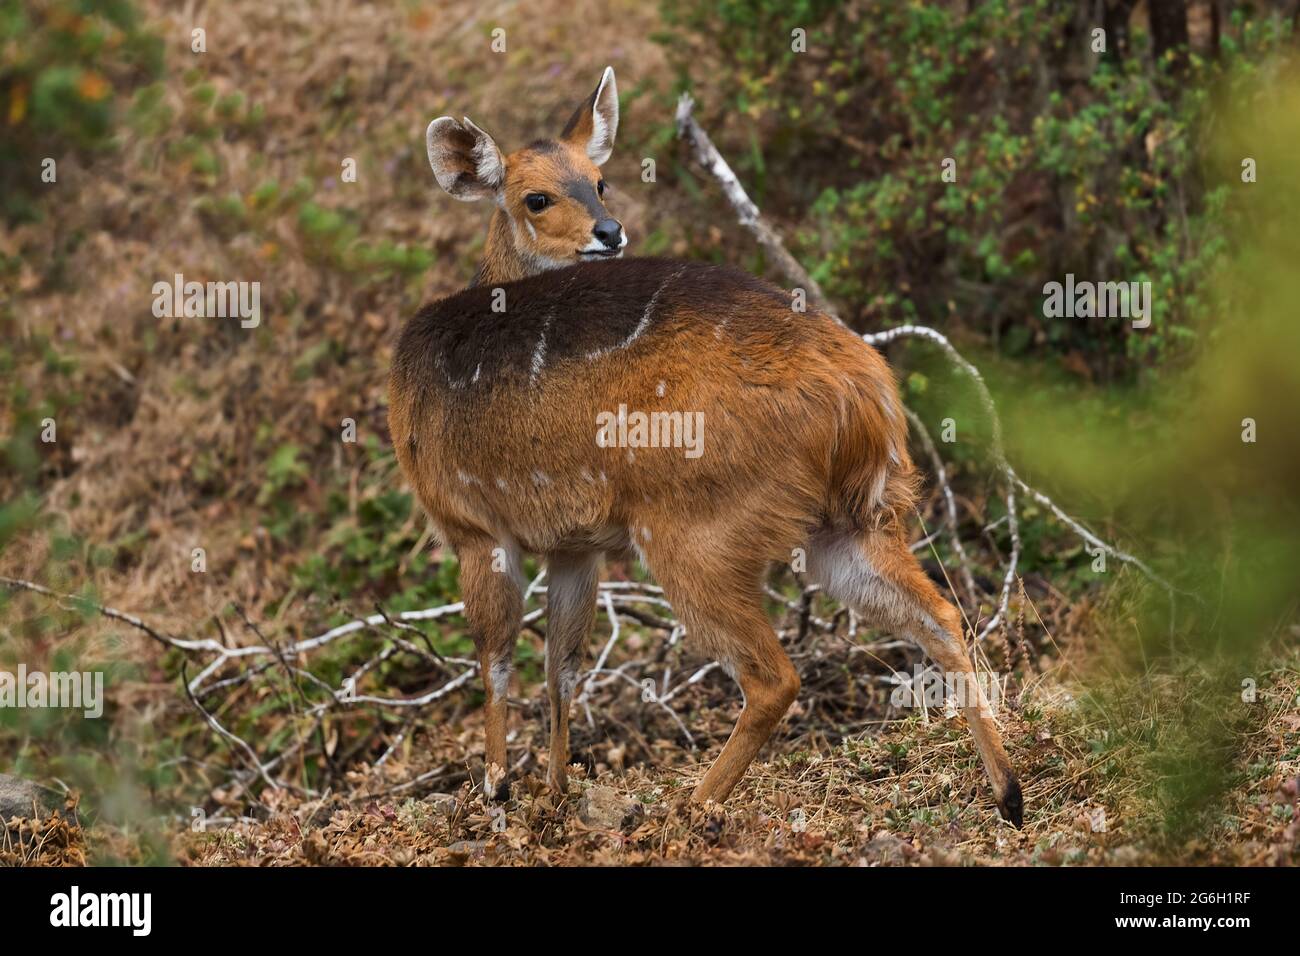 Le buck de Menelik - Tragelaphus scriptus meneliki, magnifique antilope timide endémique dans les montagnes Ethiopiennes, les montagnes de Bale, l'Éthiopie. Banque D'Images